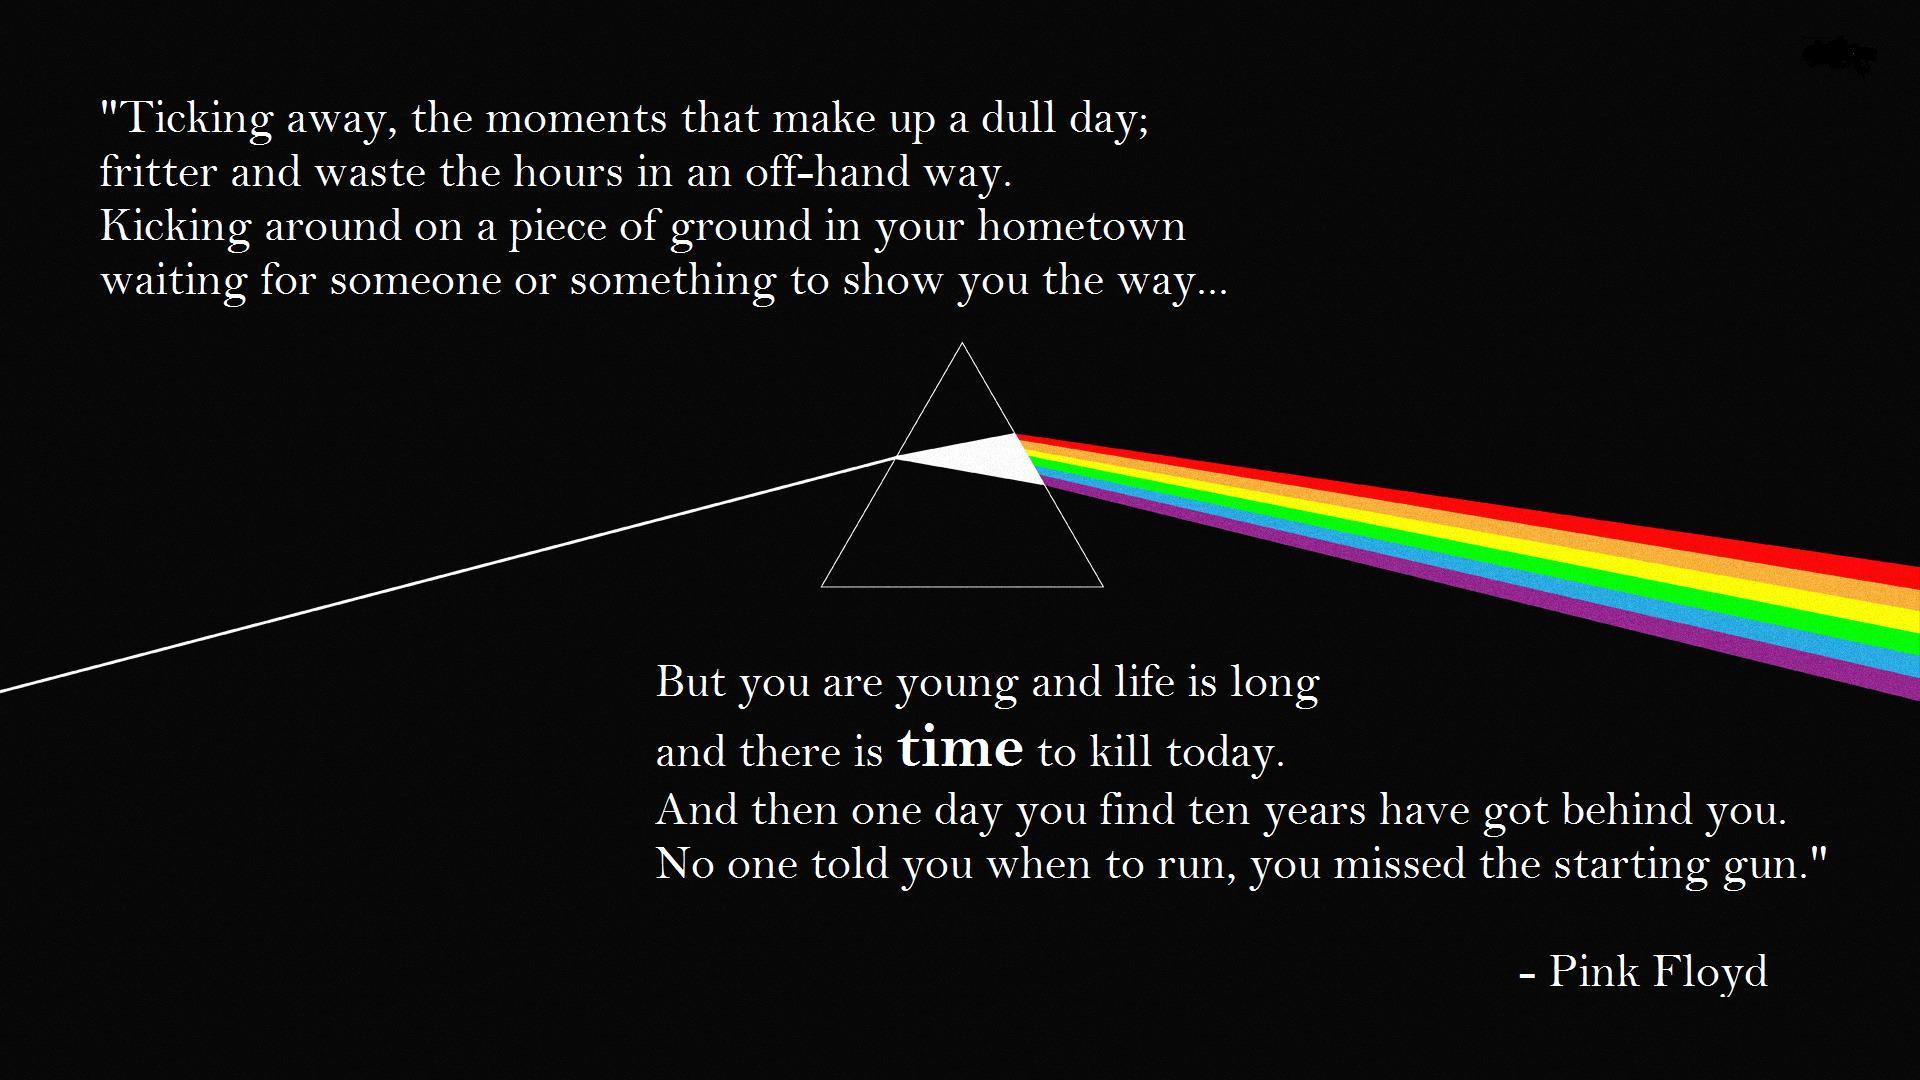 Pink Floyd – Time Lyrics